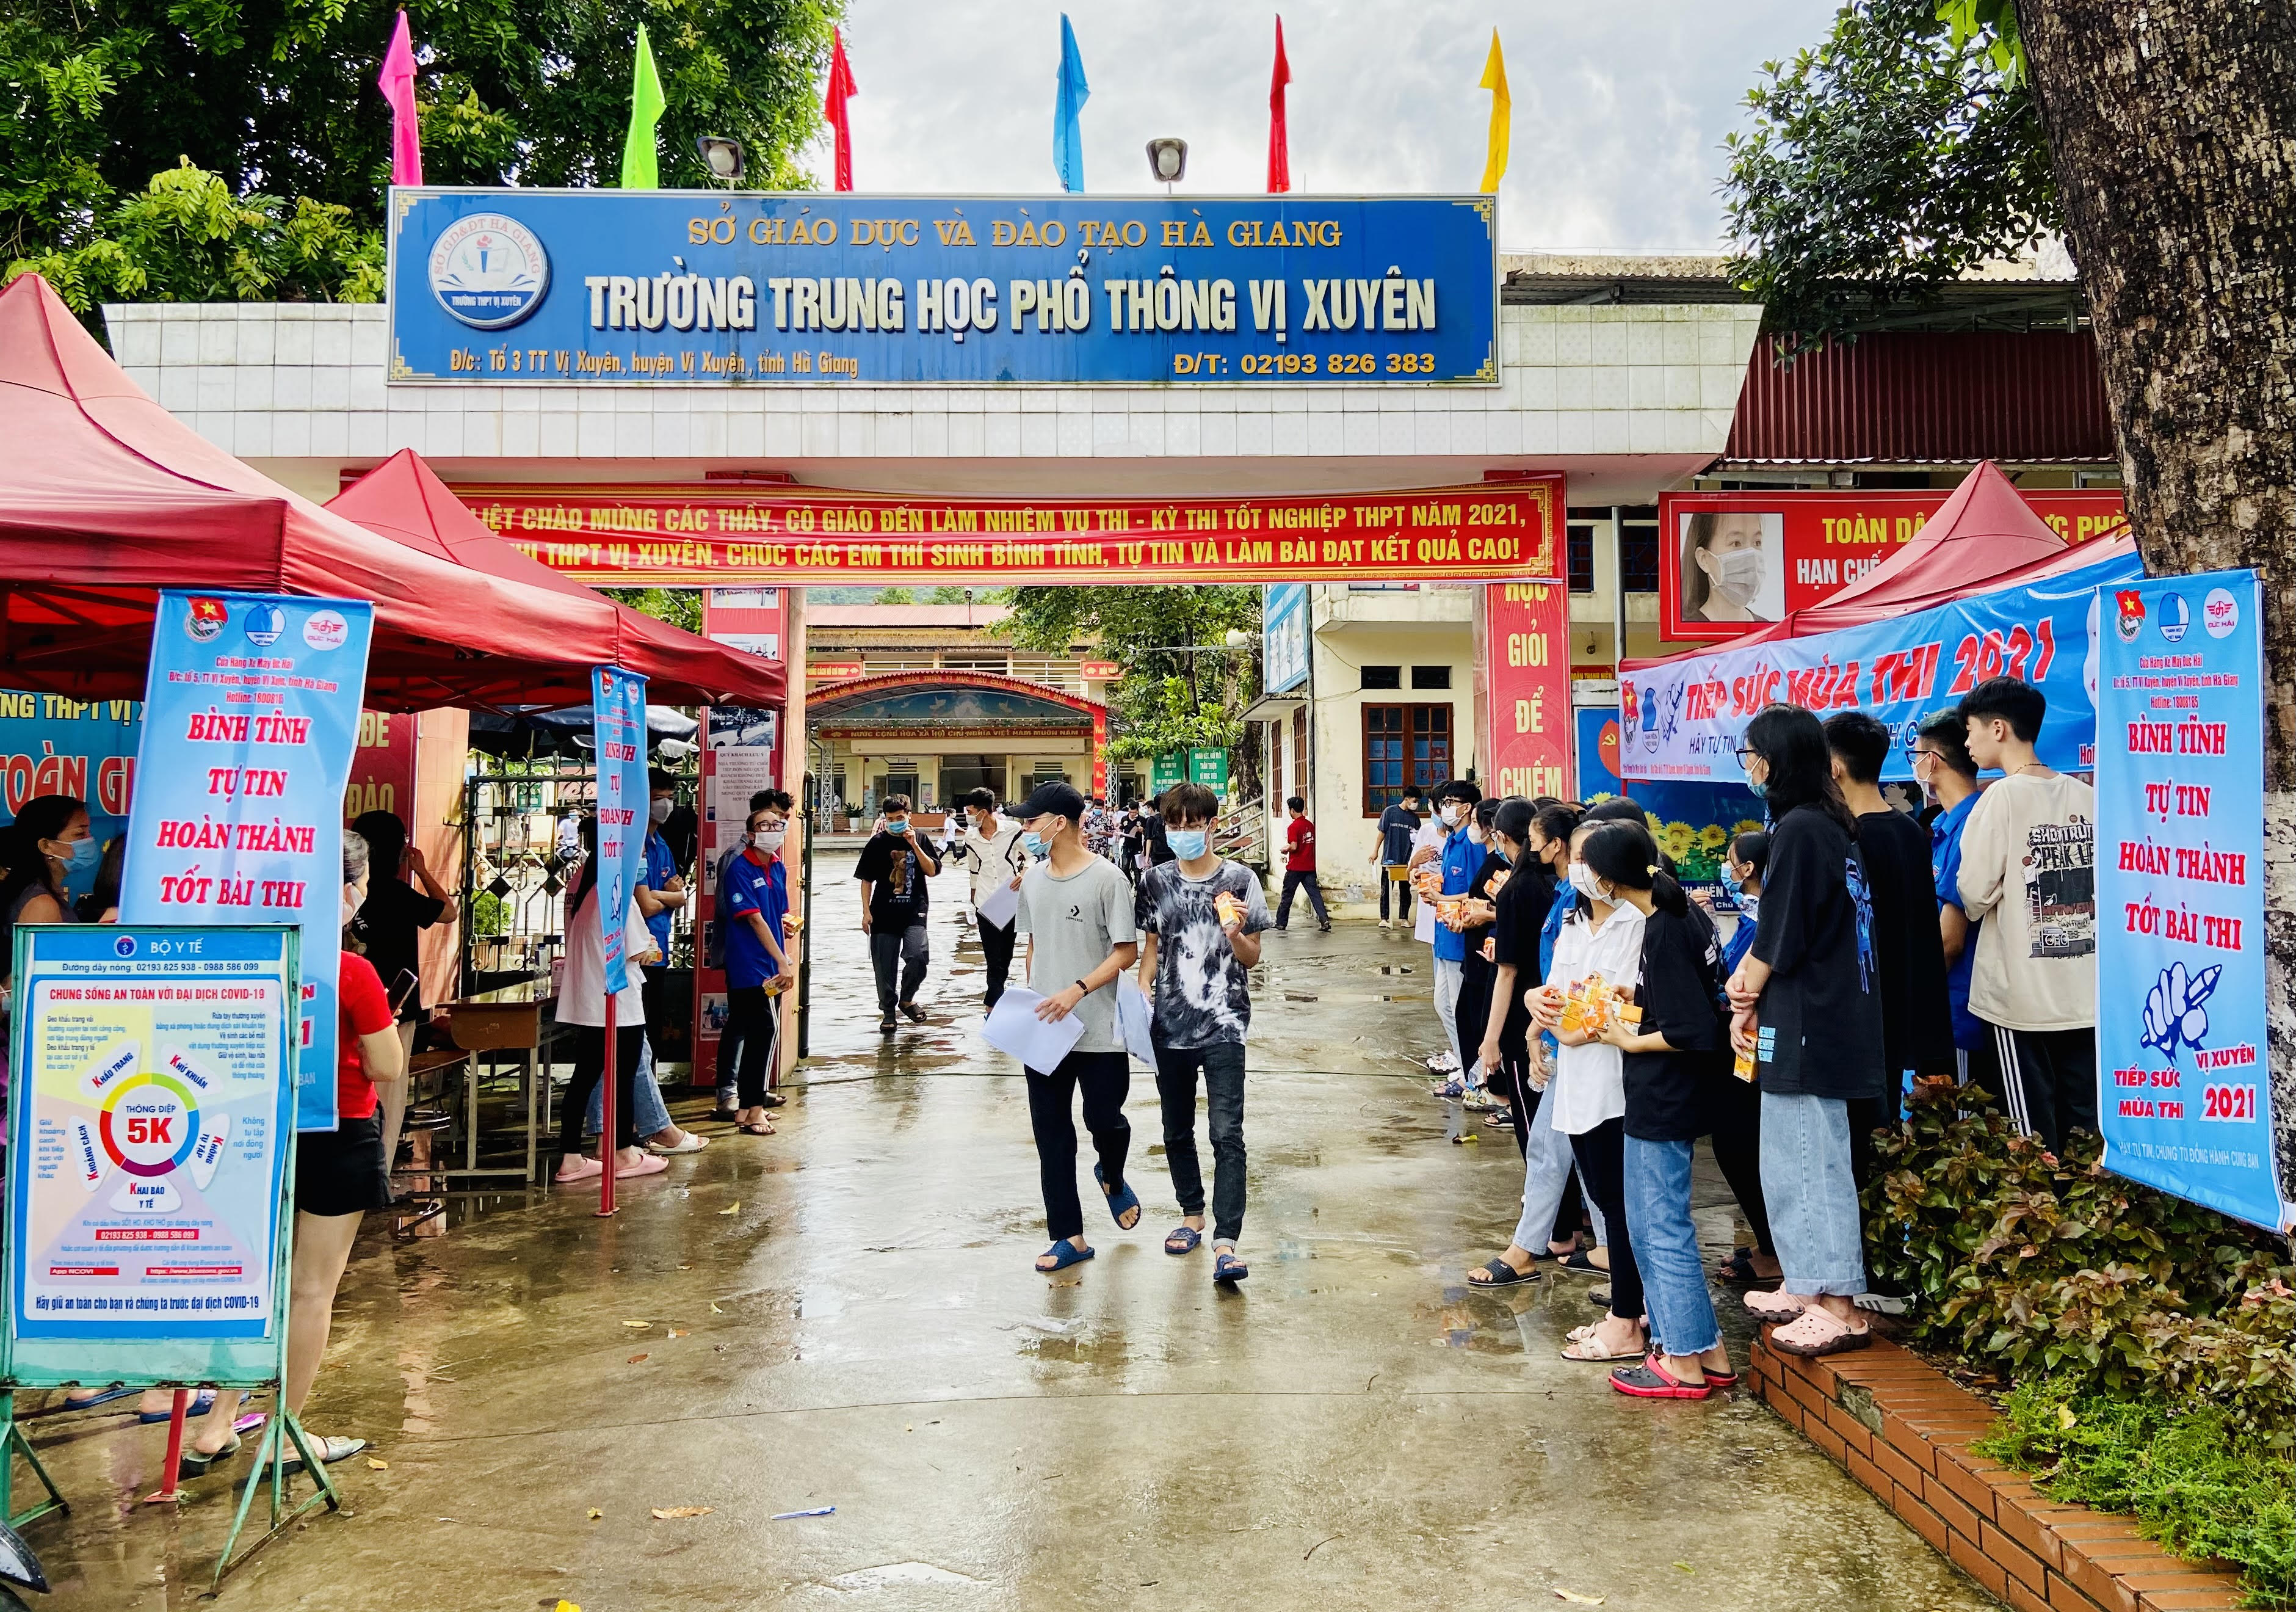 Vị Xuyên kết thúc kỳ thi Tốt nghiệp THPT 2021